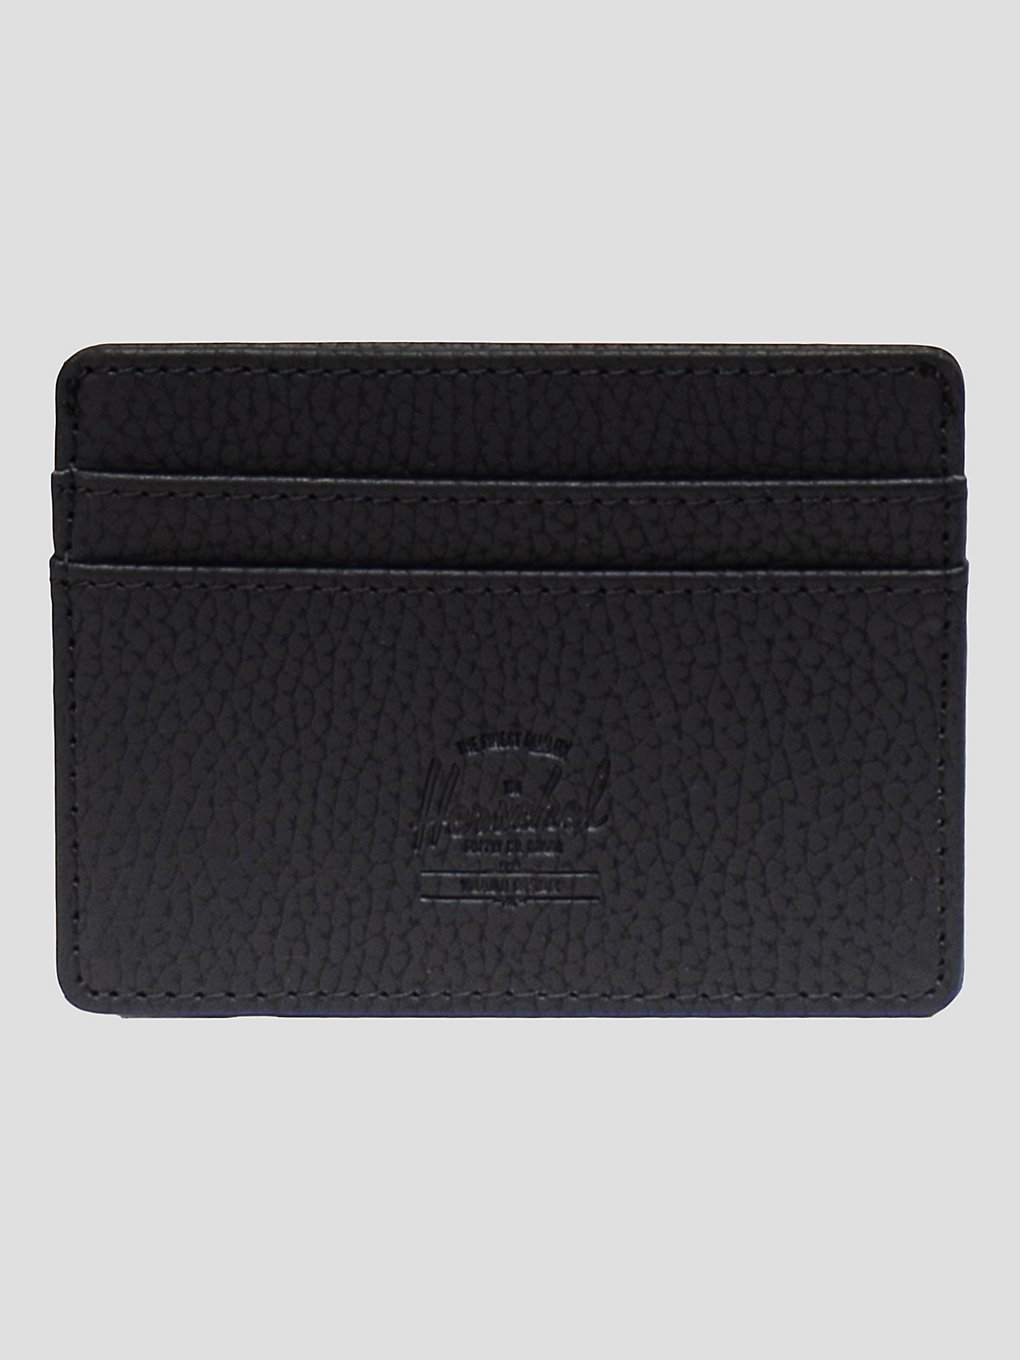 Herschel Charlie Vegan Leather RFID Geldbörse black kaufen